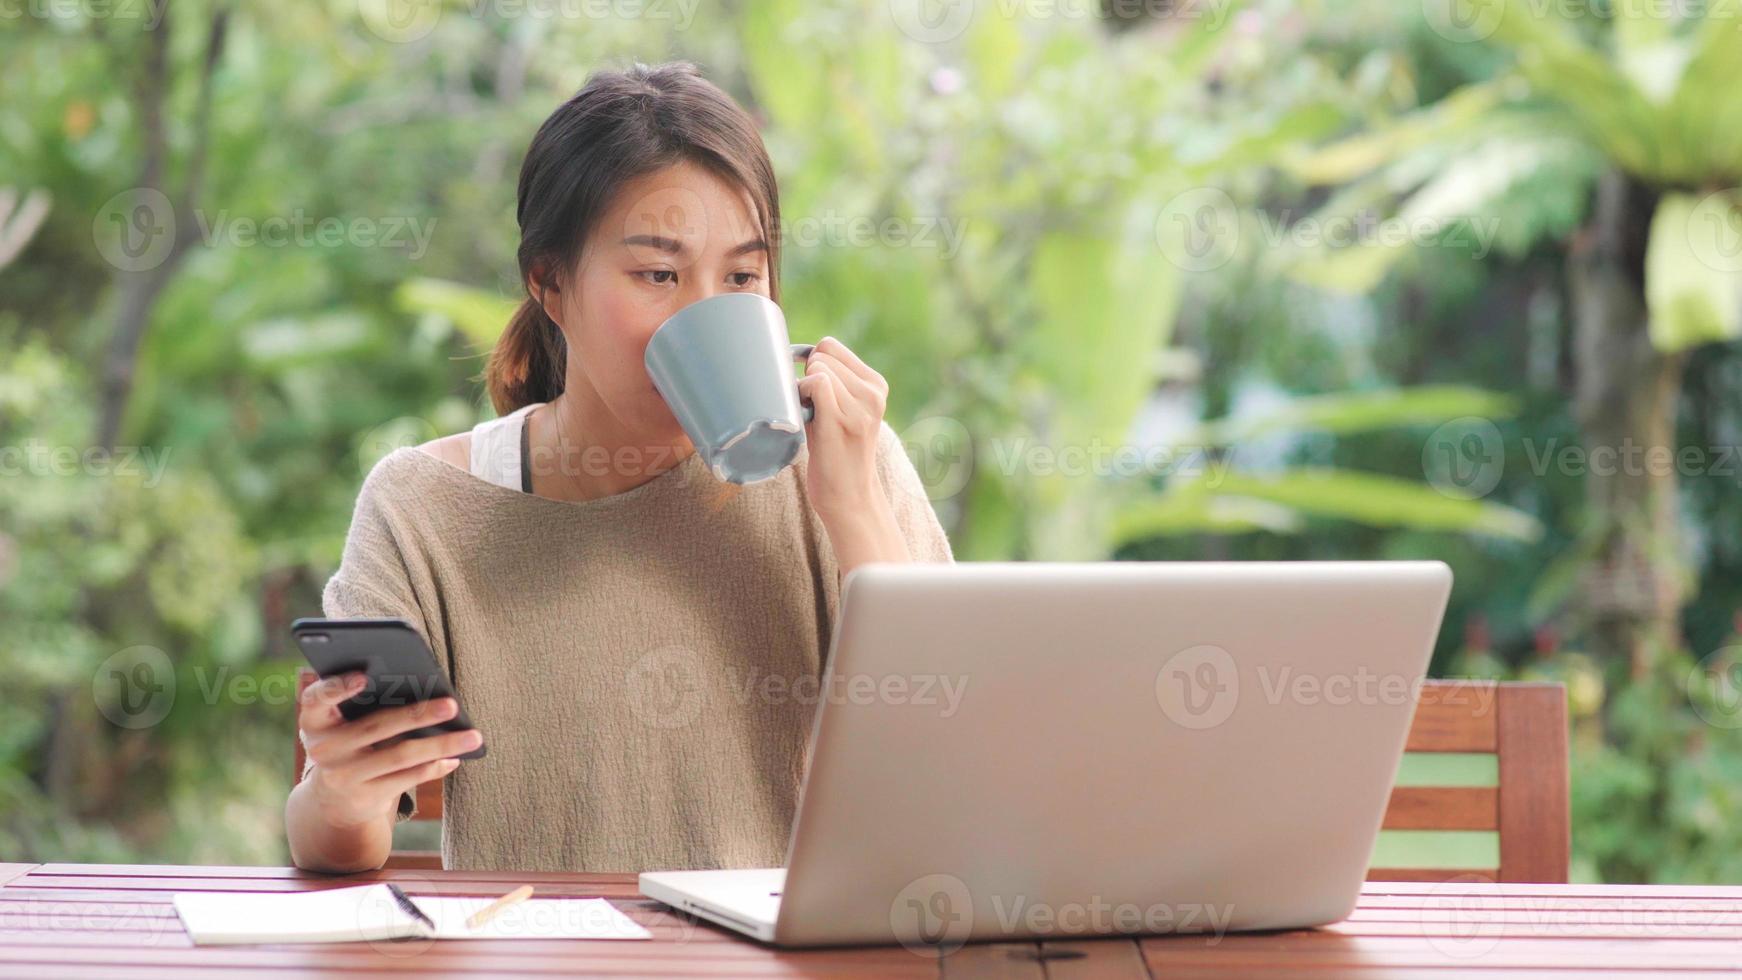 frilans asiatisk kvinna som arbetar hemma, affärskvinna som arbetar på bärbar dator och använder mobiltelefon som dricker kaffe sitter på bordet i trädgården på morgonen. livsstil kvinnor arbetar hemma koncept. foto